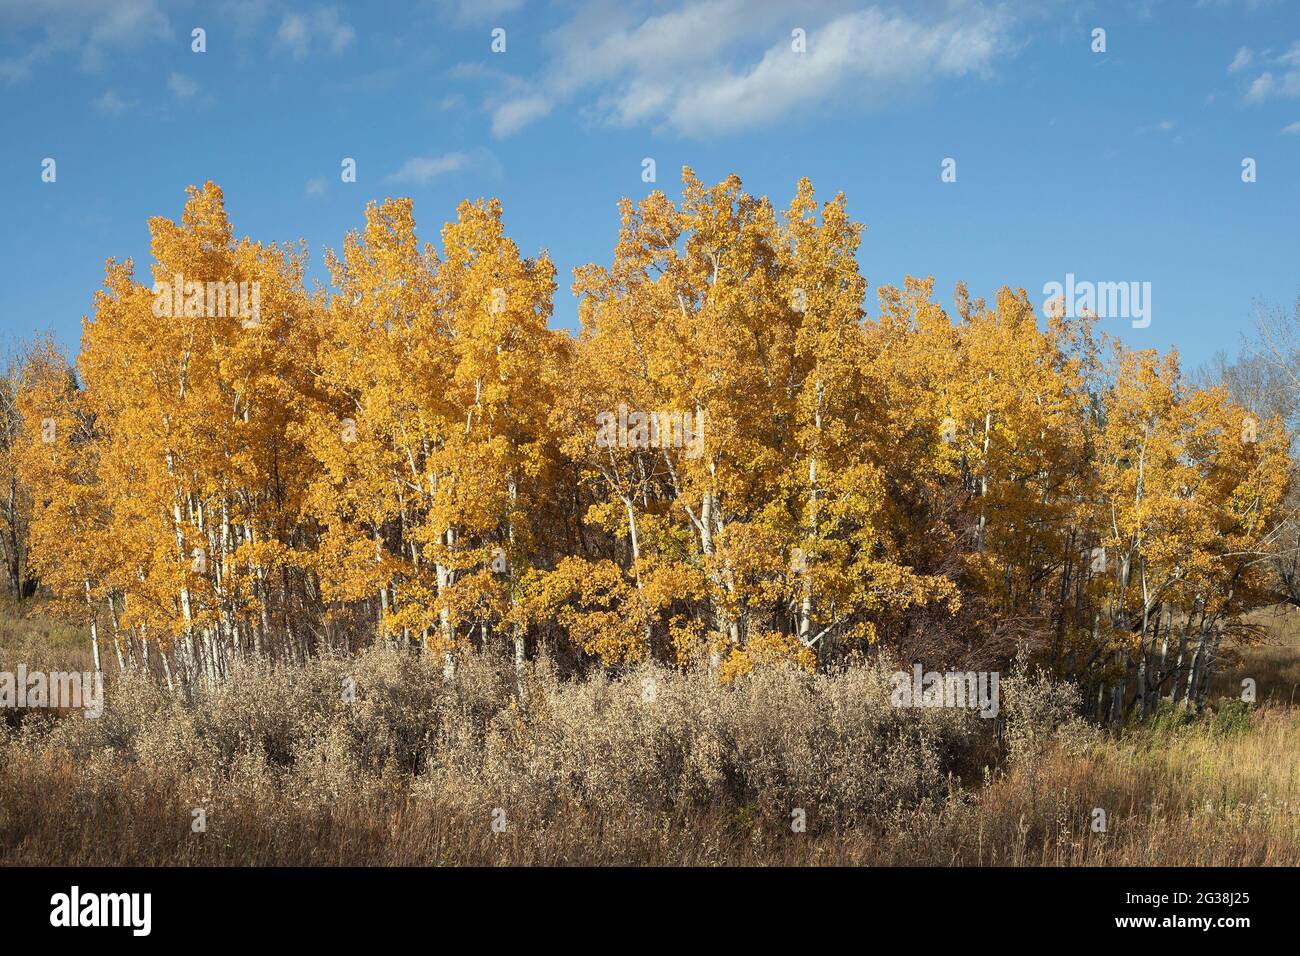 Comunidad de plantas de pradera de árboles tremblantes dorados de Aspen (Populus tremuloides), arbustos de arándanos (Elaeagnus commutata) y pastos en otoño Foto de stock